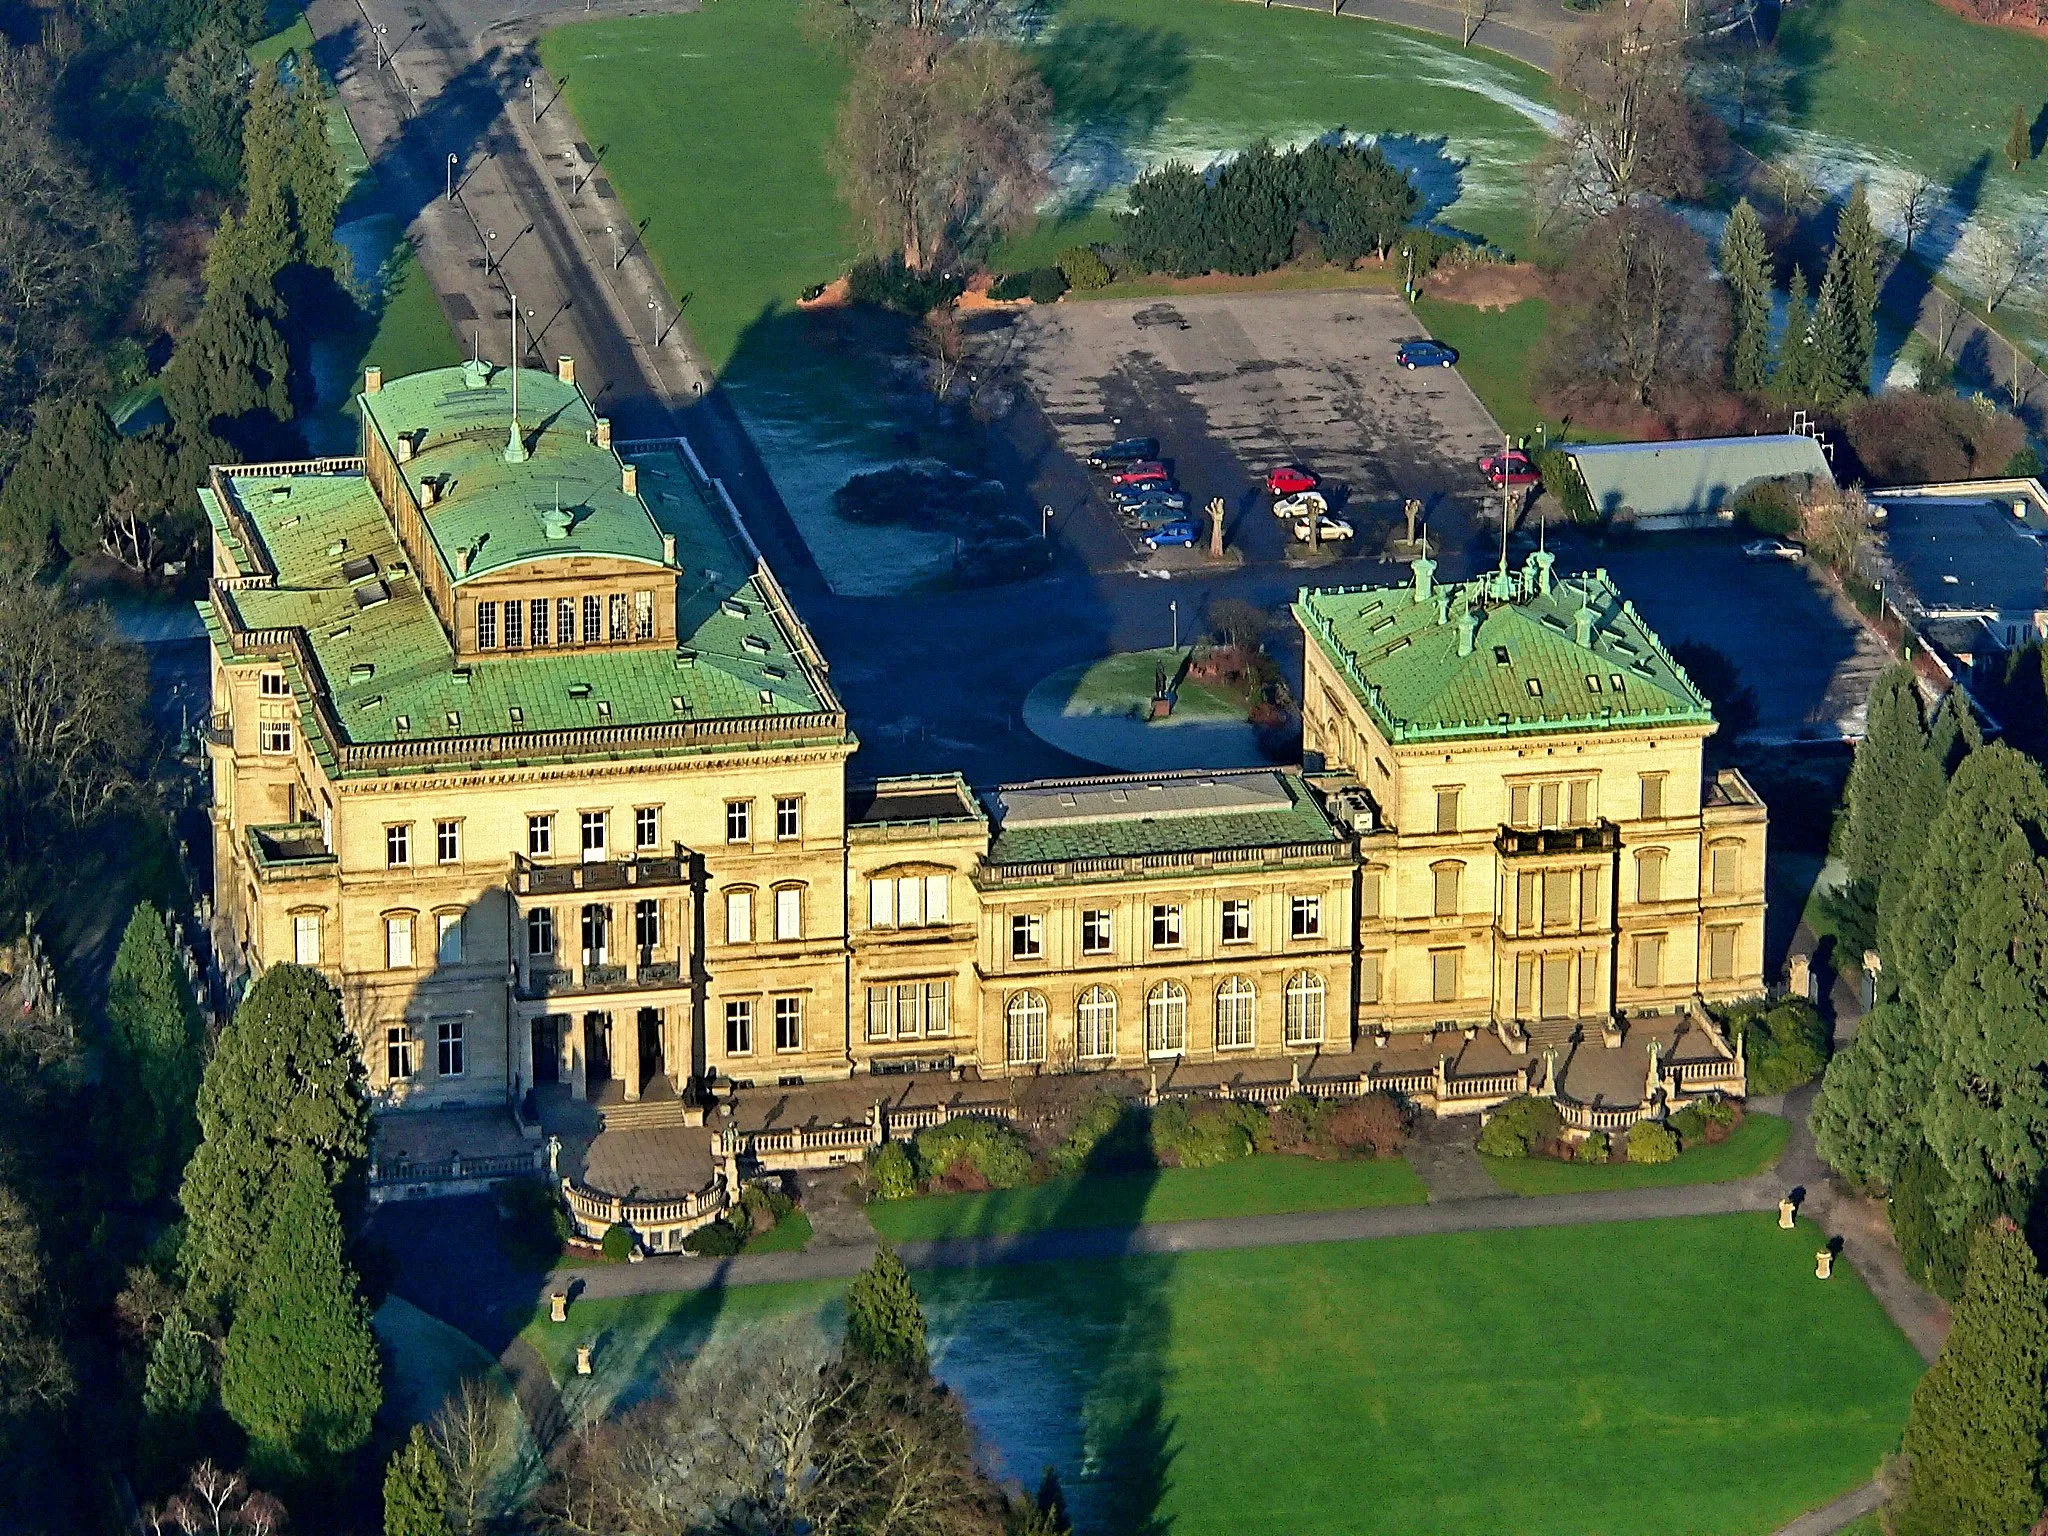 Photo showing: Luftbild der Villa Hügel, das ehemalige Wohnhaus der Krupp-Familie in Essen, Südseite